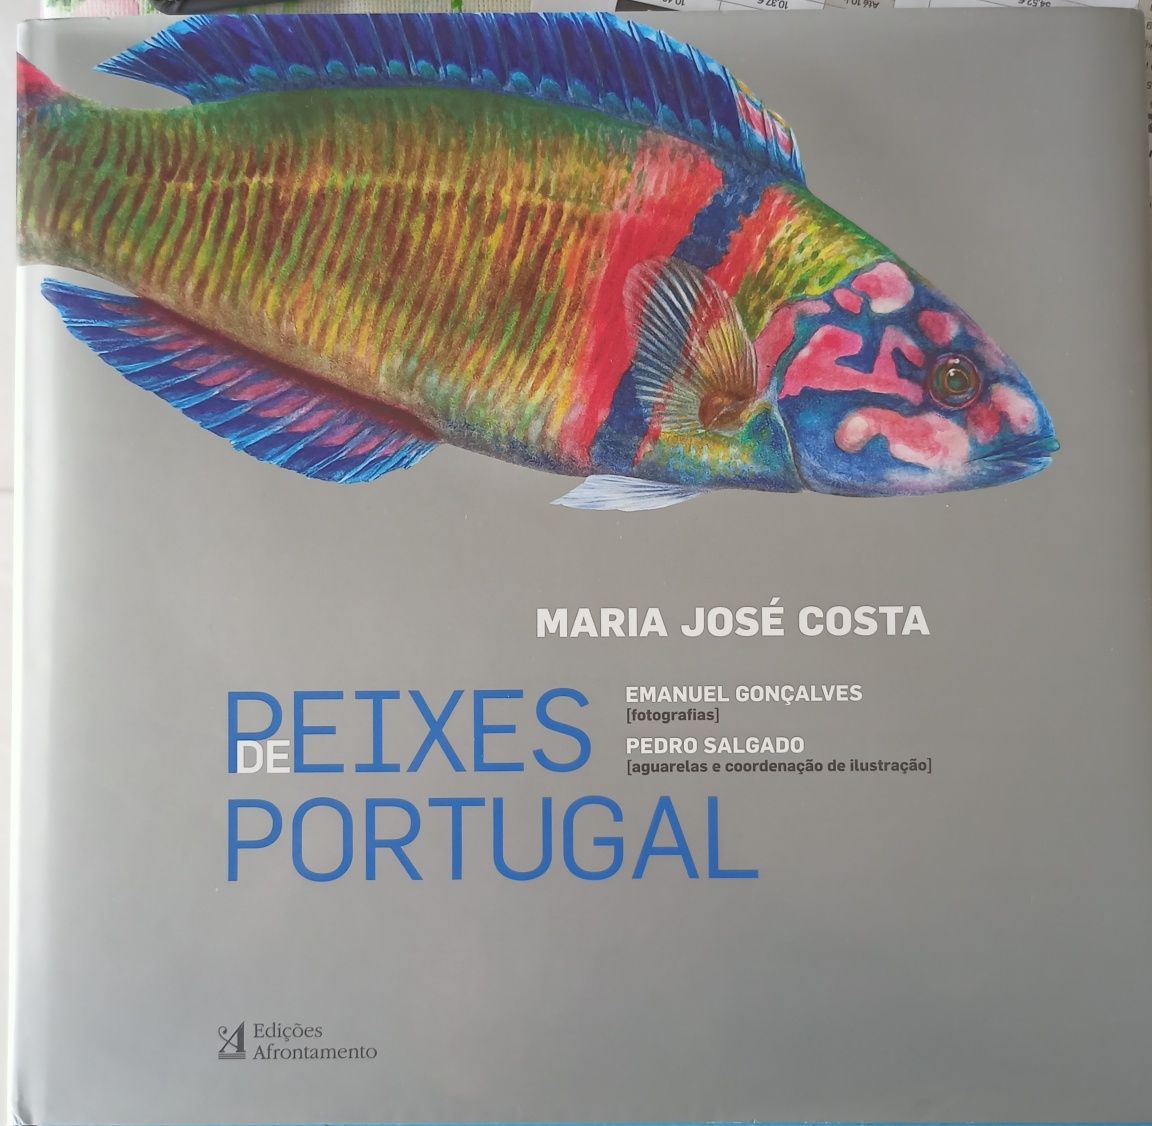 Livro "Peixes de Portugal"